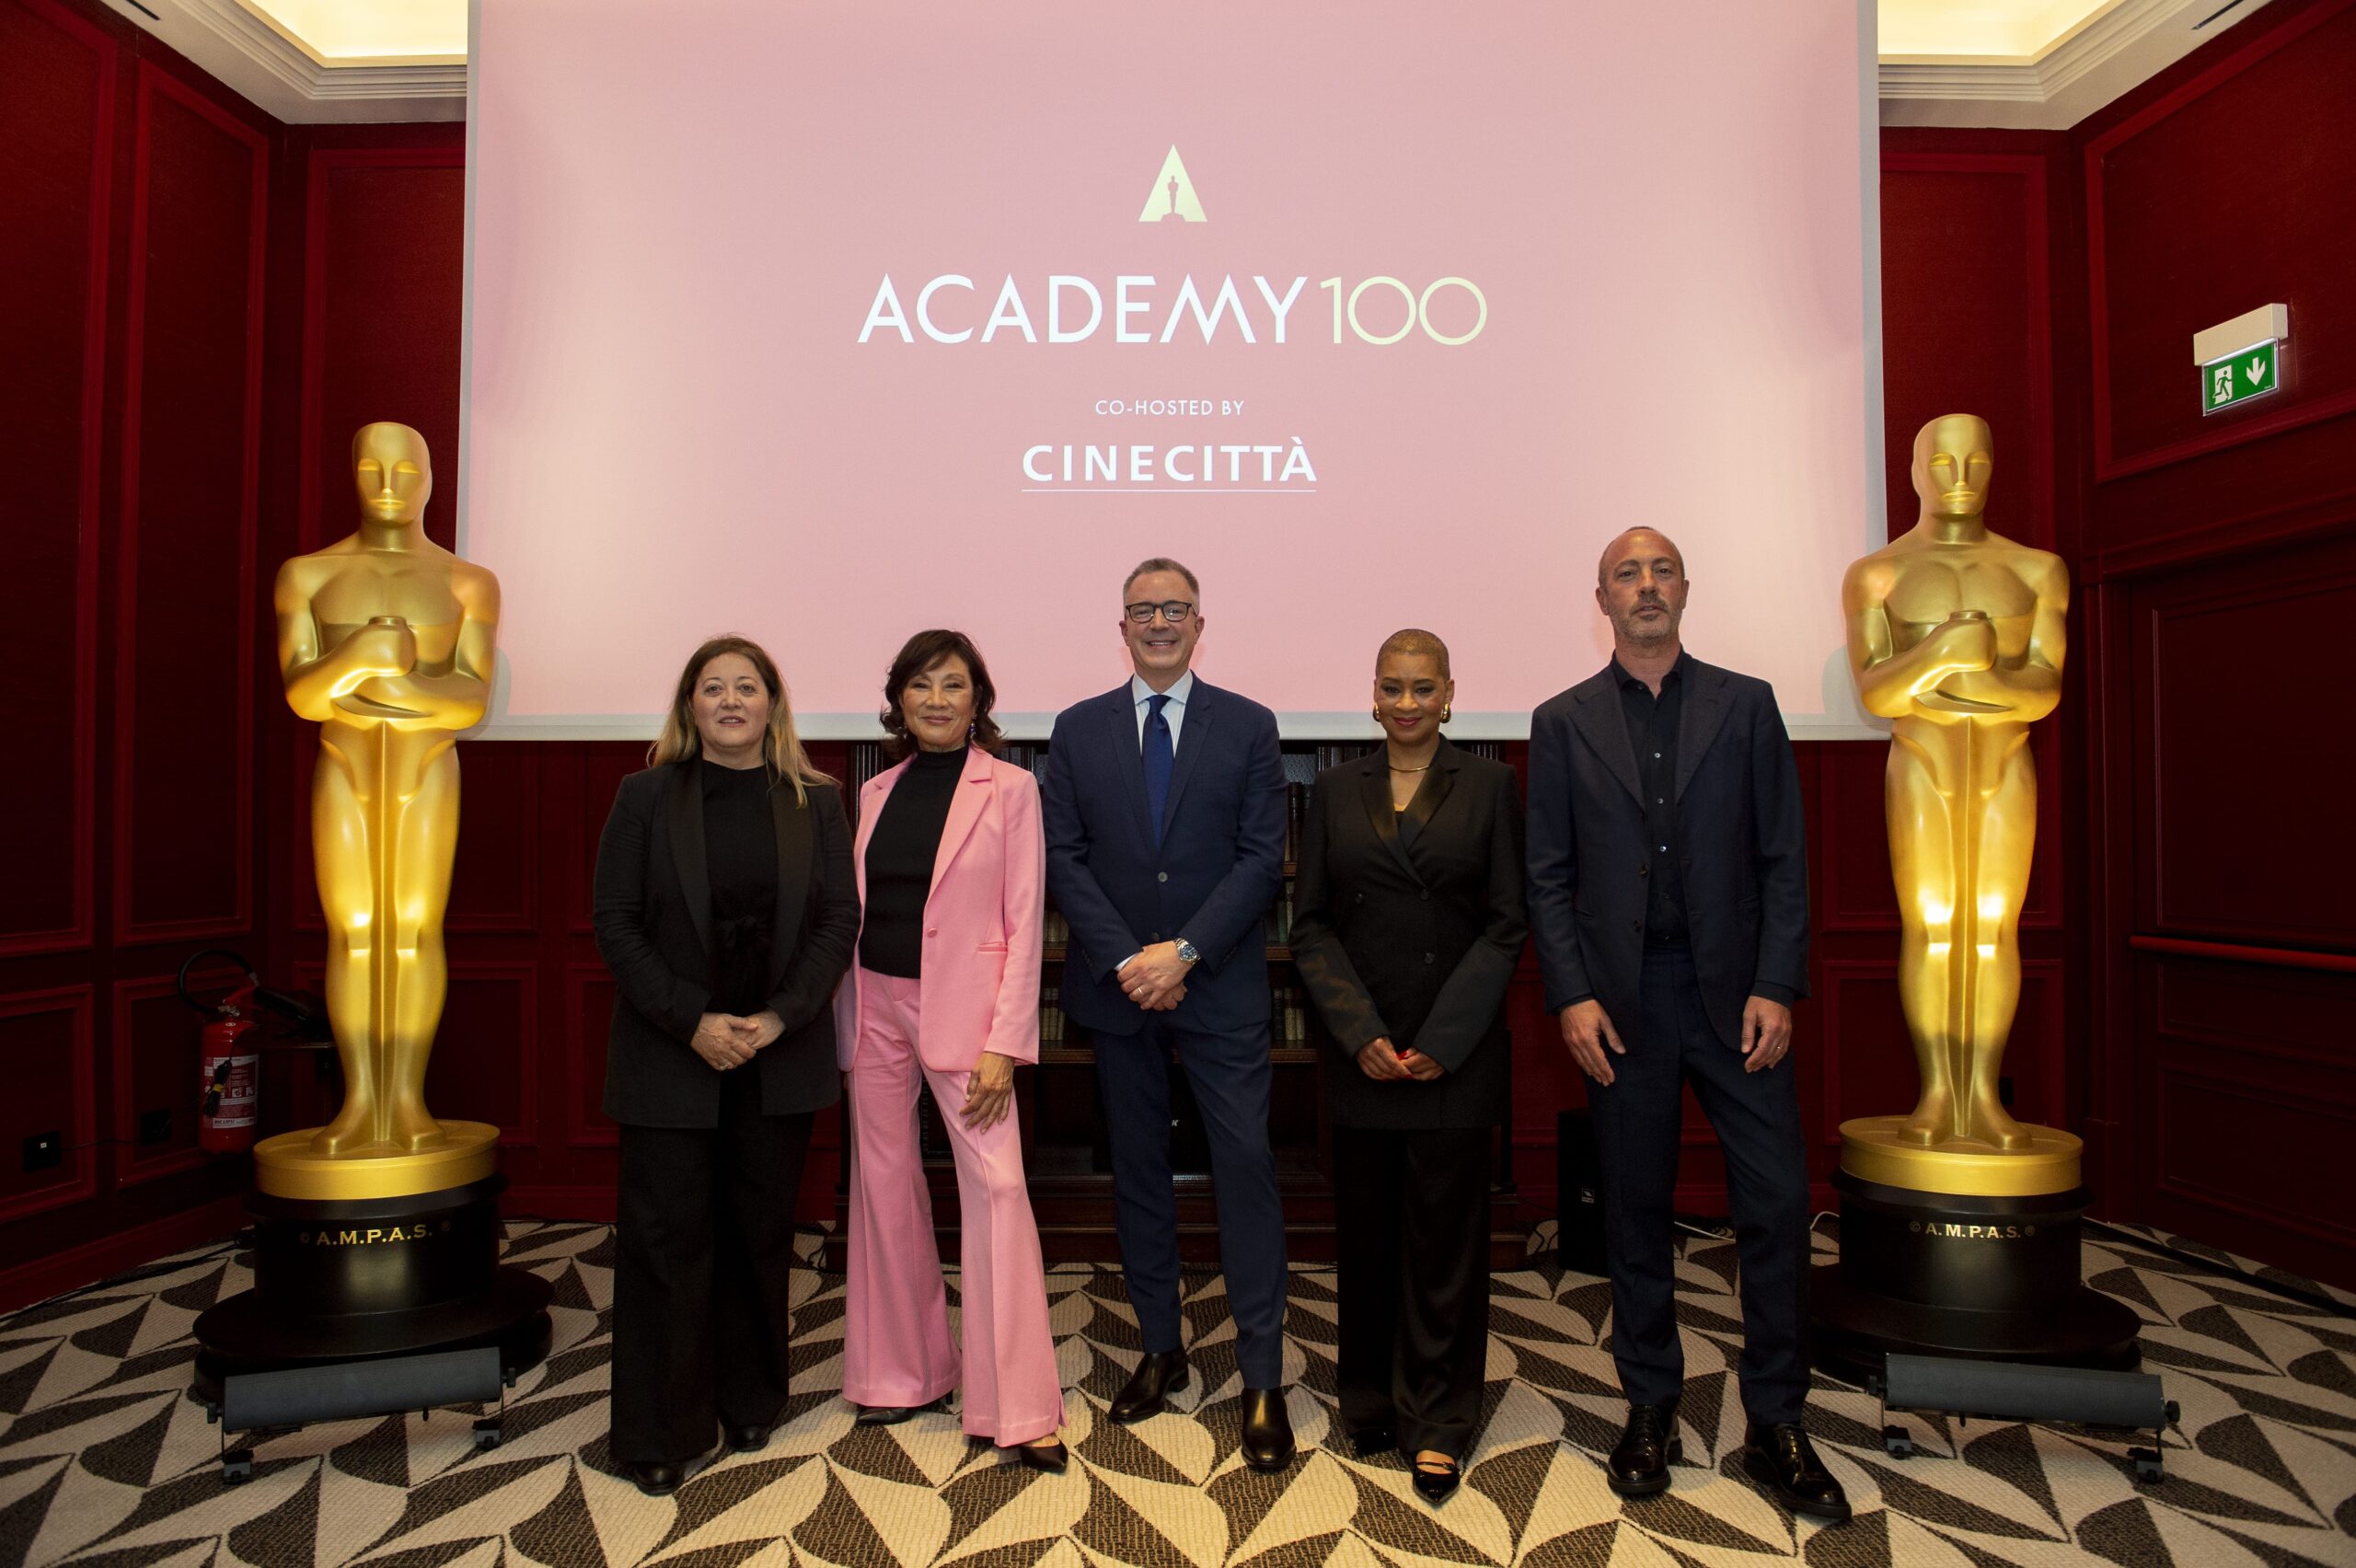 Il cinema del futuro: Academy 100 e Cinecittà